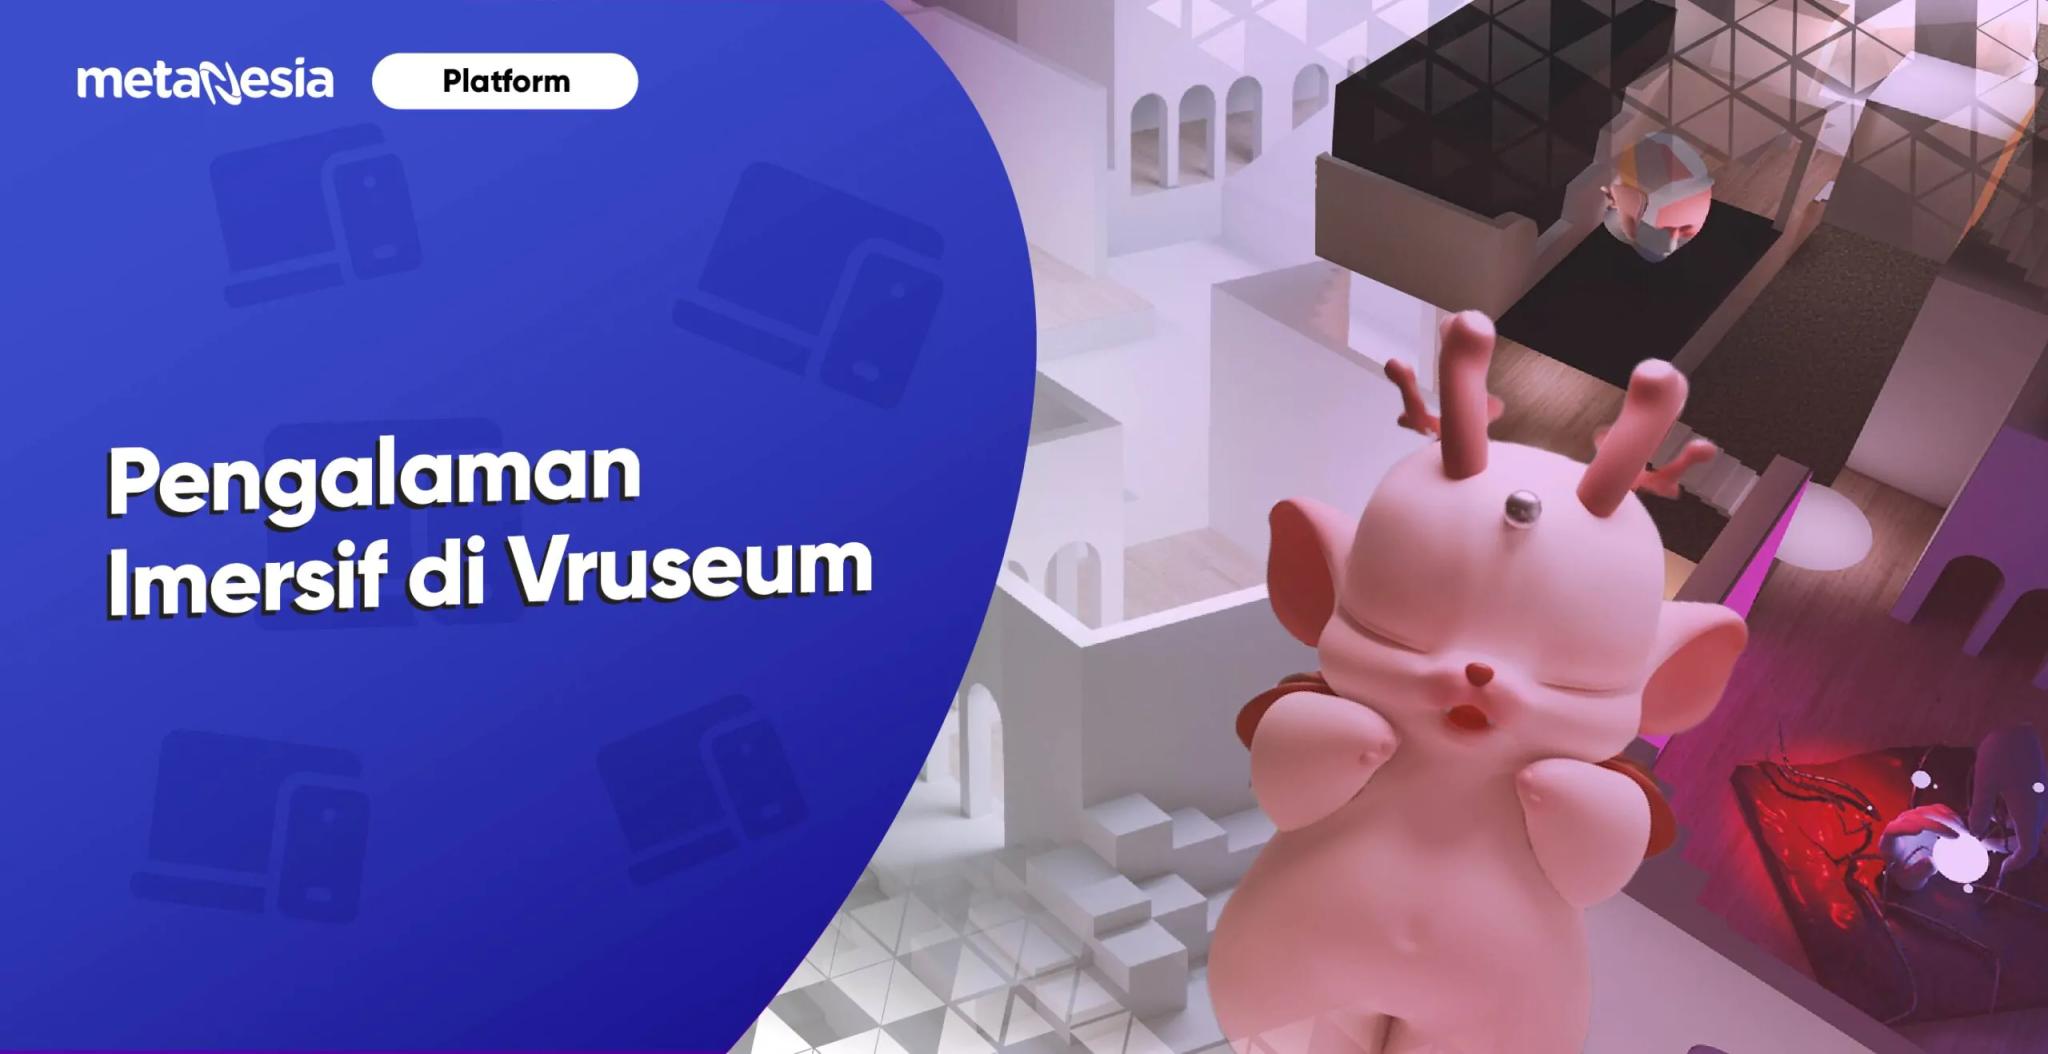 Pengalaman Imersif Virtual di Vruseum, Menyajikan Dunia Digital yang Unik